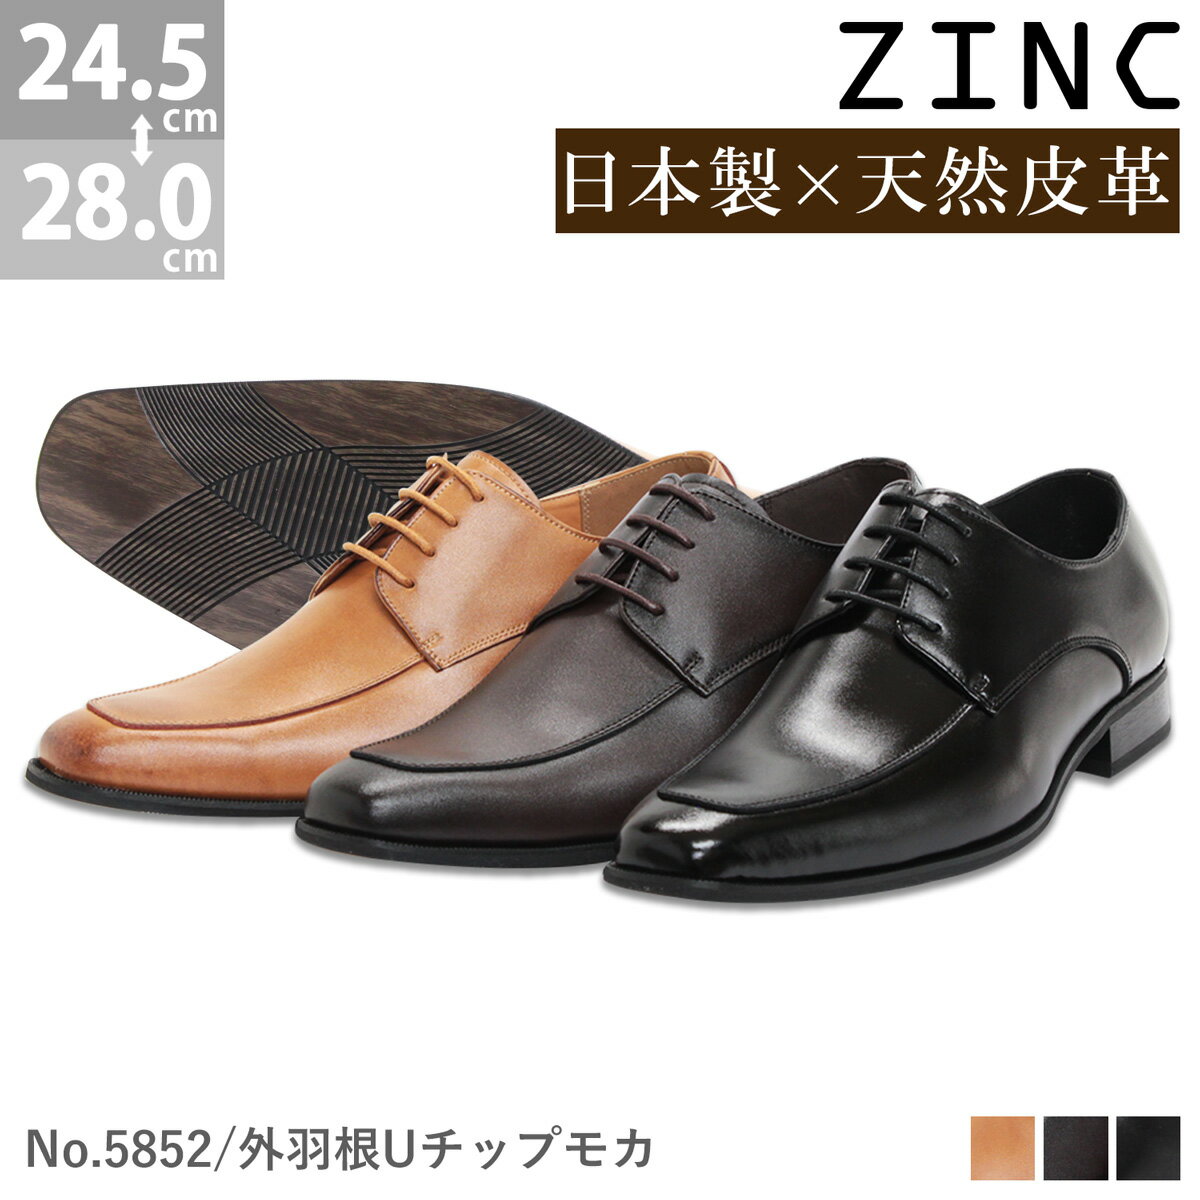 ビジネスシューズ 本革 日本製 革靴 ZINC ジンク ロン